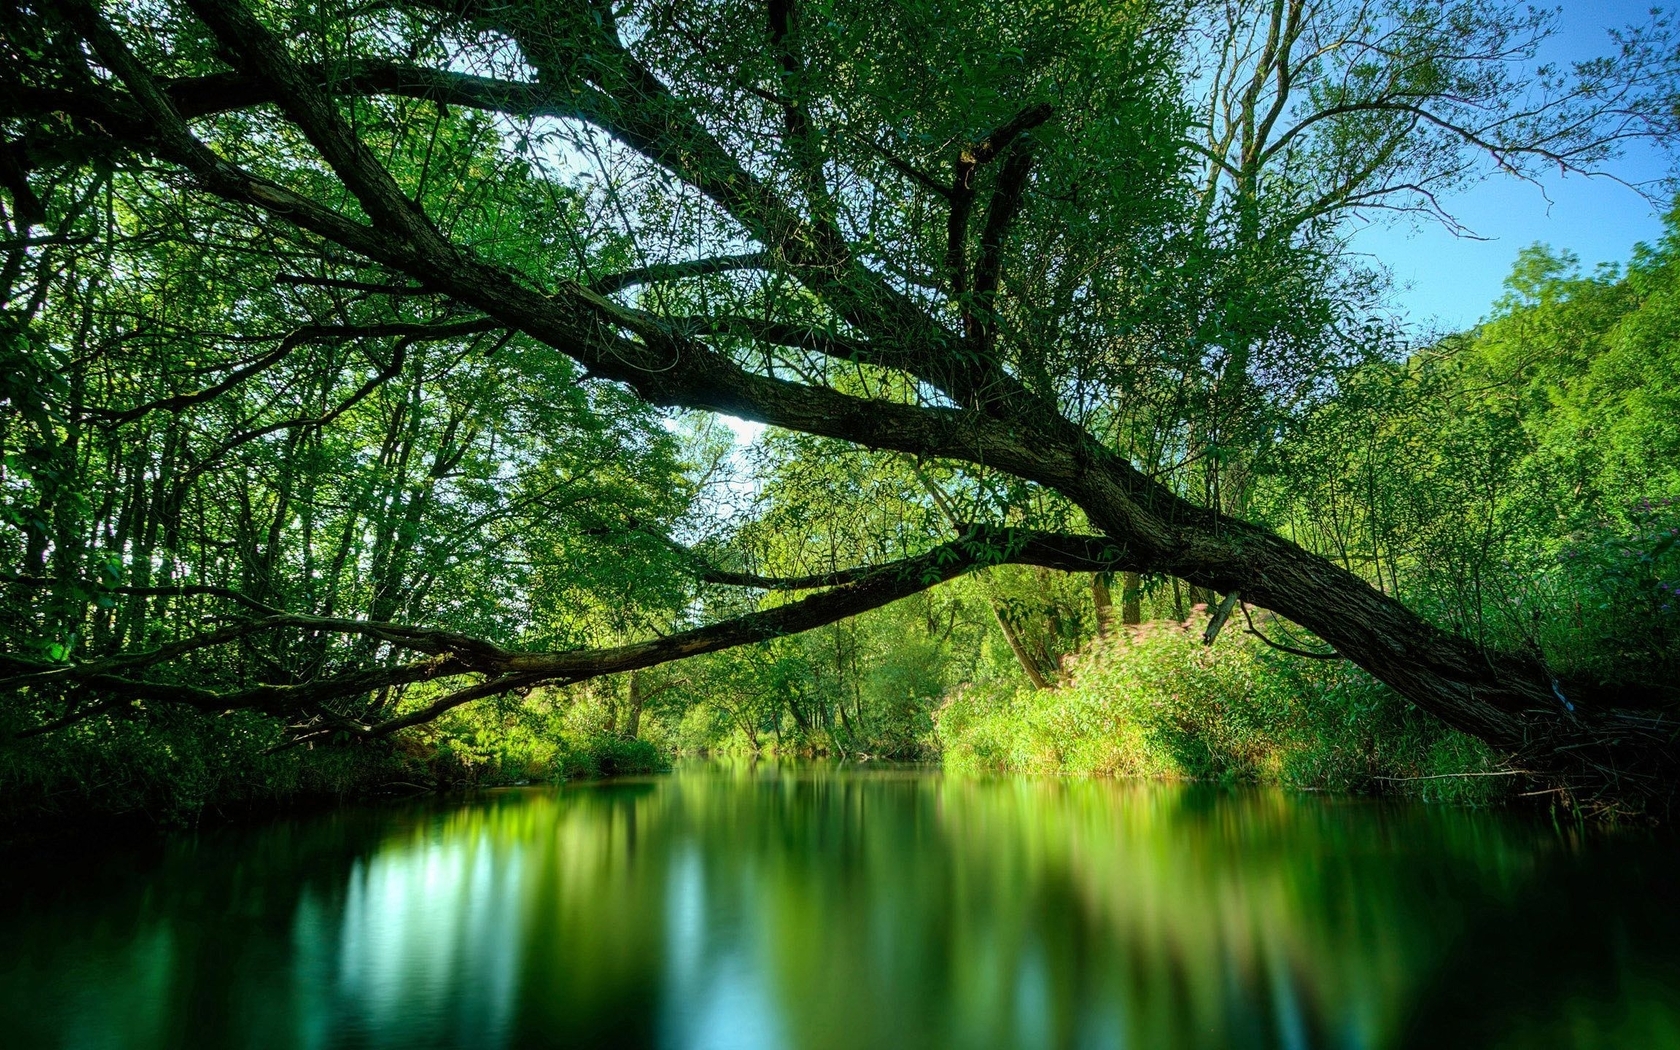 Картинка: Деревья, ветви, листья, крона, зелень, вода, отражение, небо